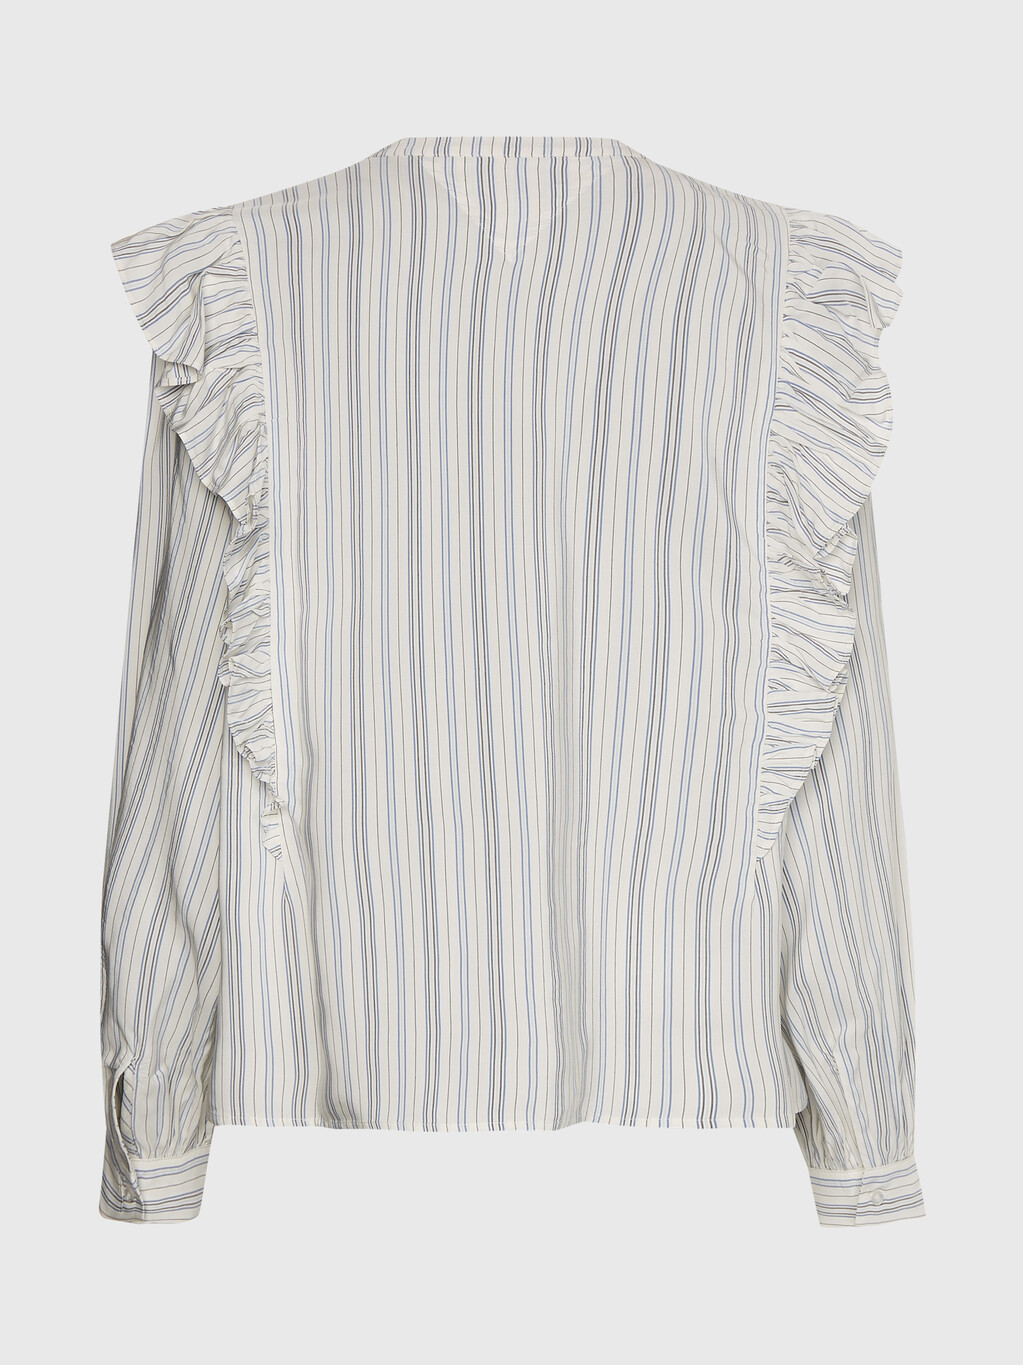 粘膠條紋荷葉邊裇衫, Textured Stripe /Ecru Blue, hi-res